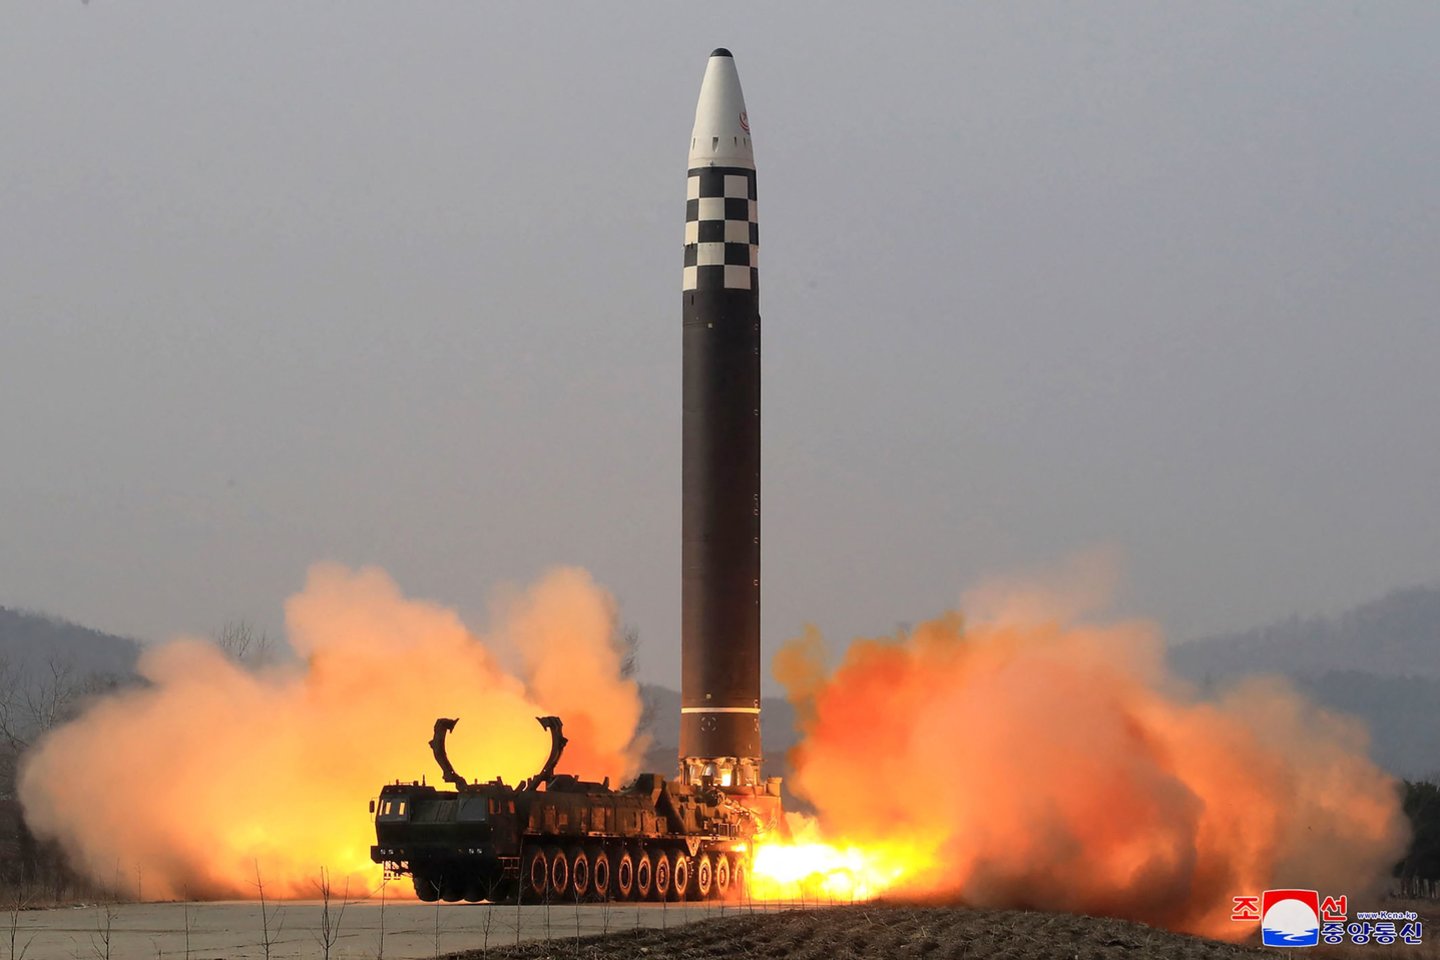 Šiaurės Korėja panaudos savo branduolinius ginklus Pietų Korėjos kariuomenei „sunaikinti“.<br>AFP/Scanpix nuotr.